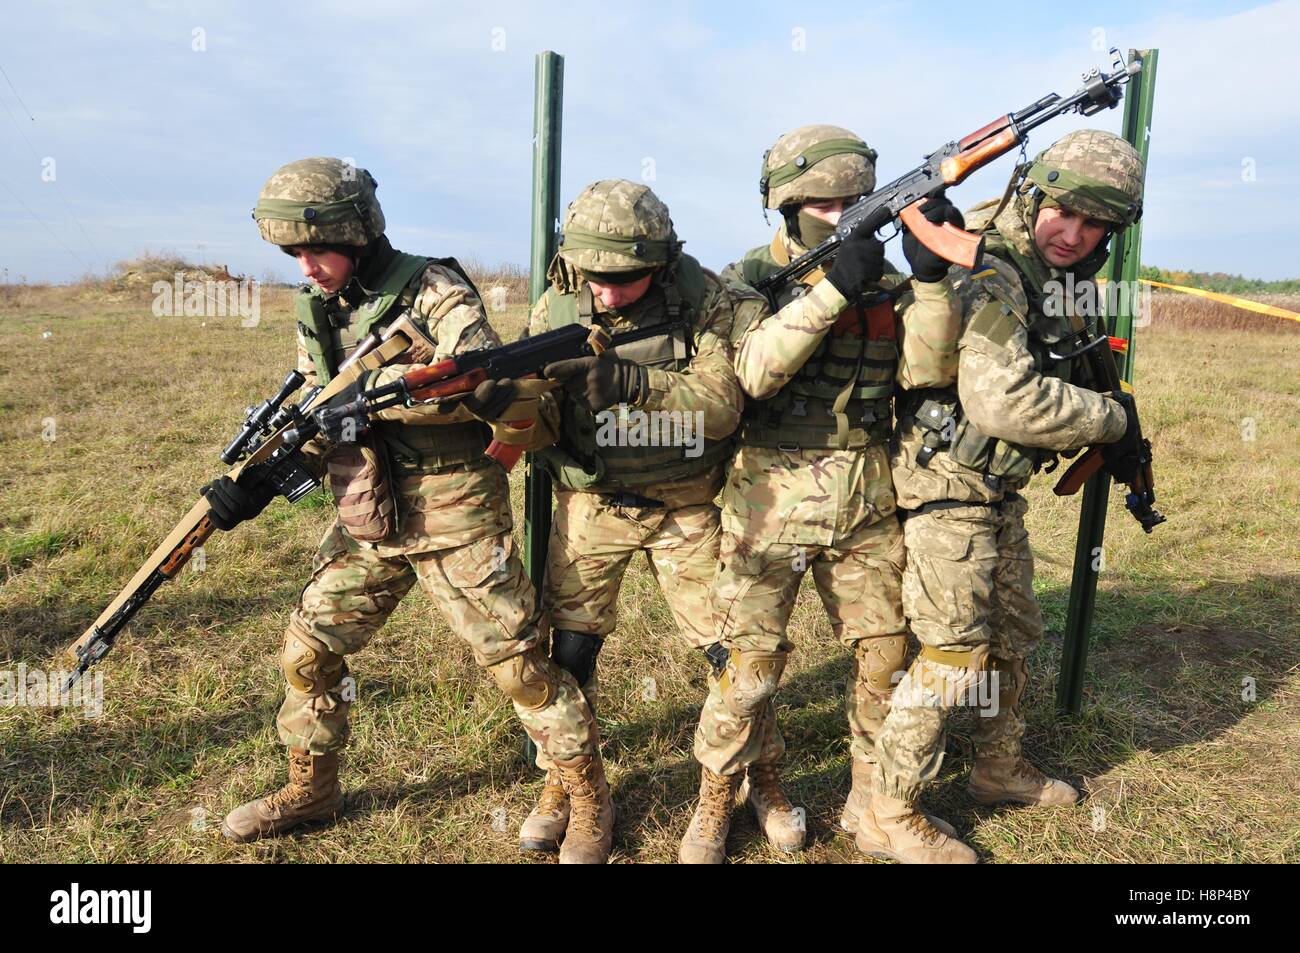 Los soldados ucranianos apilar hasta Sala de prácticas procedimientos de compensación durante un ejercicio de entrenamiento en el centro de mantenimiento de la paz y la seguridad internacionales, 5 de noviembre de 2016 en Yavoriv, Ucrania. Foto de stock